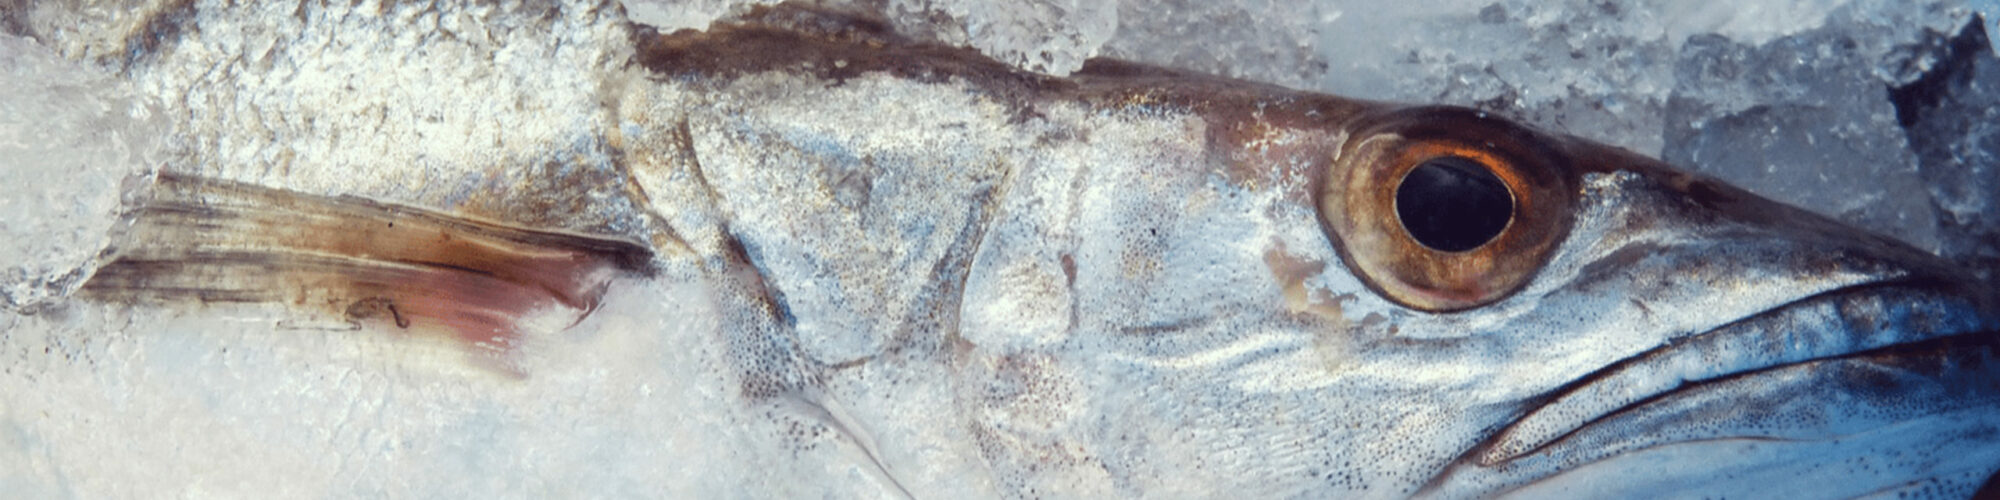 Bild eines Fischs, valantic Case Study Costa